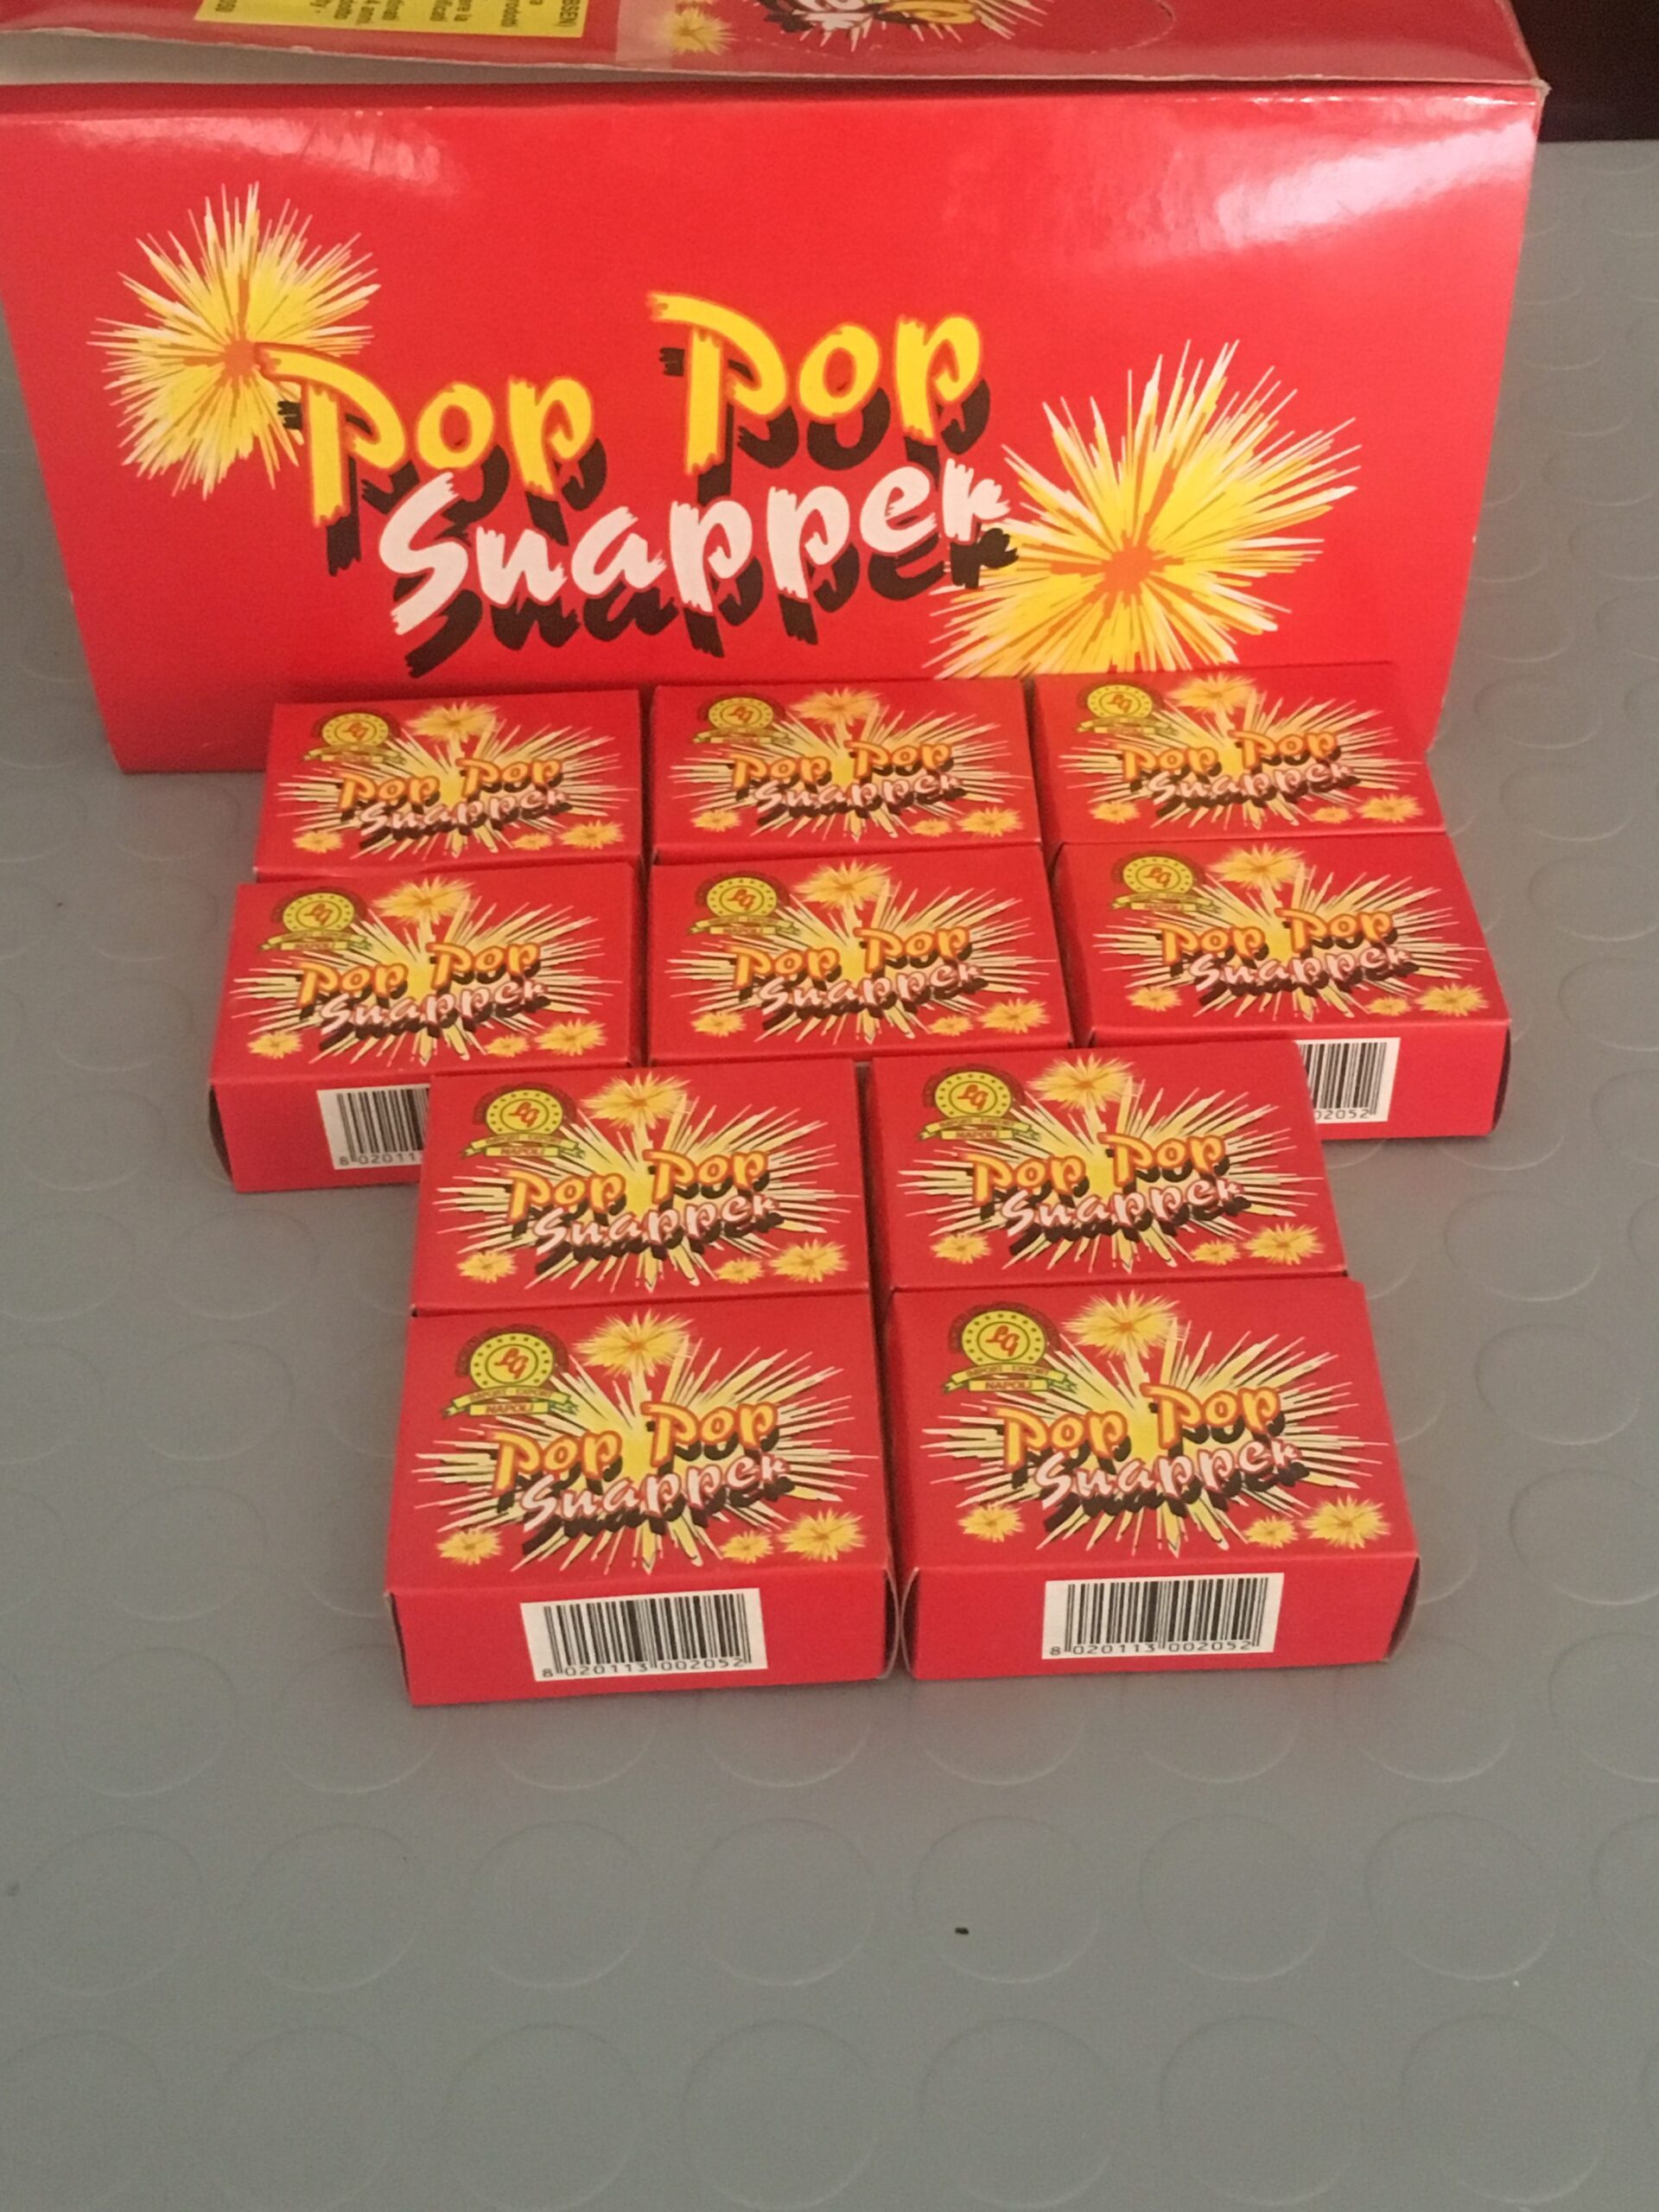 POP POP, prezzo per scatolina - Pirotecnica de Rosa